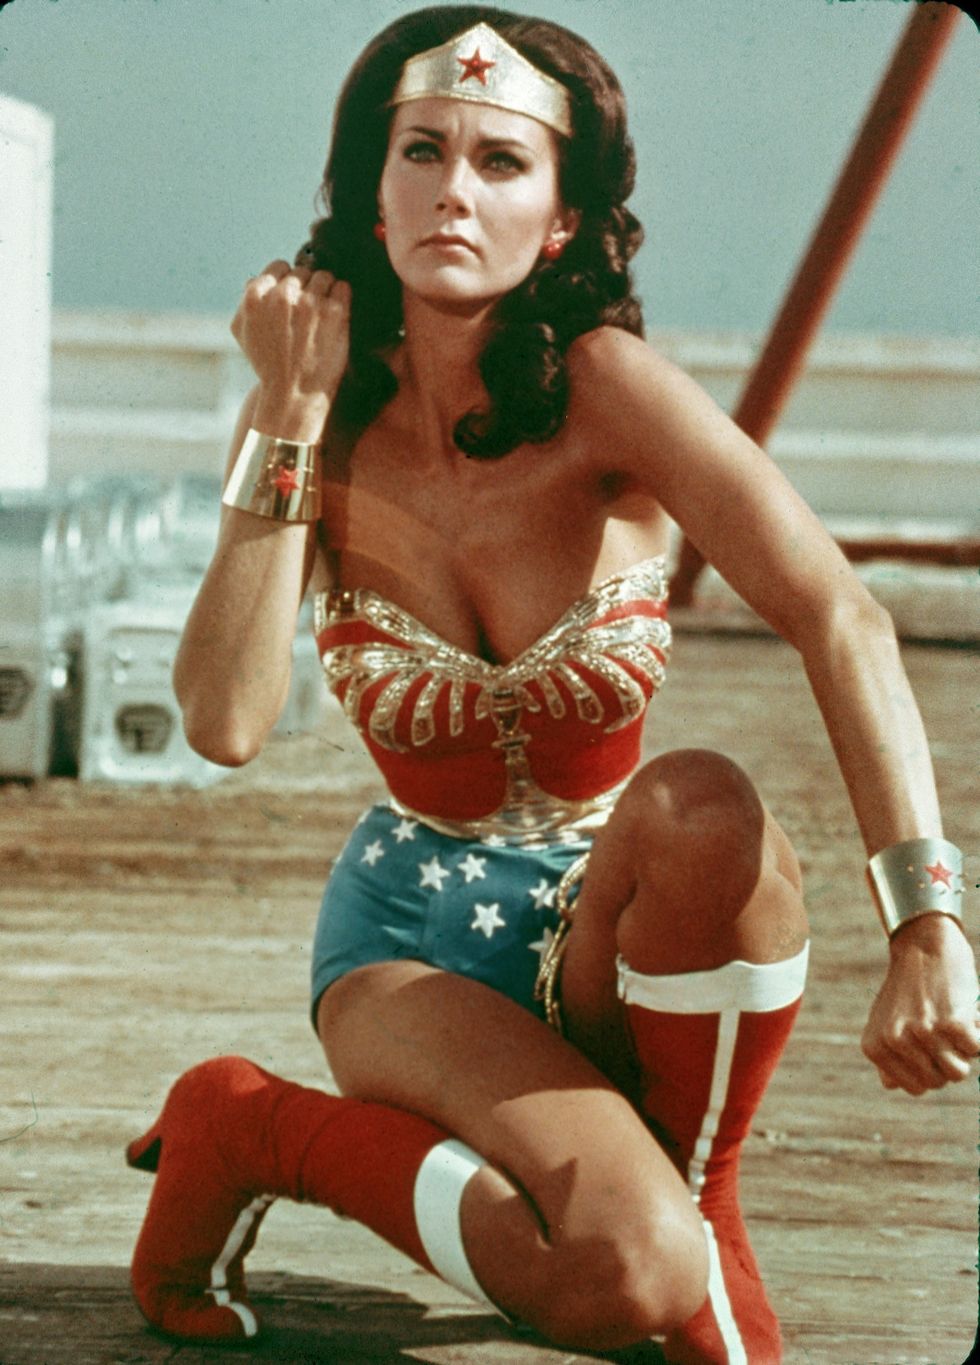 Lynda Carter in action as Wonder Woman in 1977.